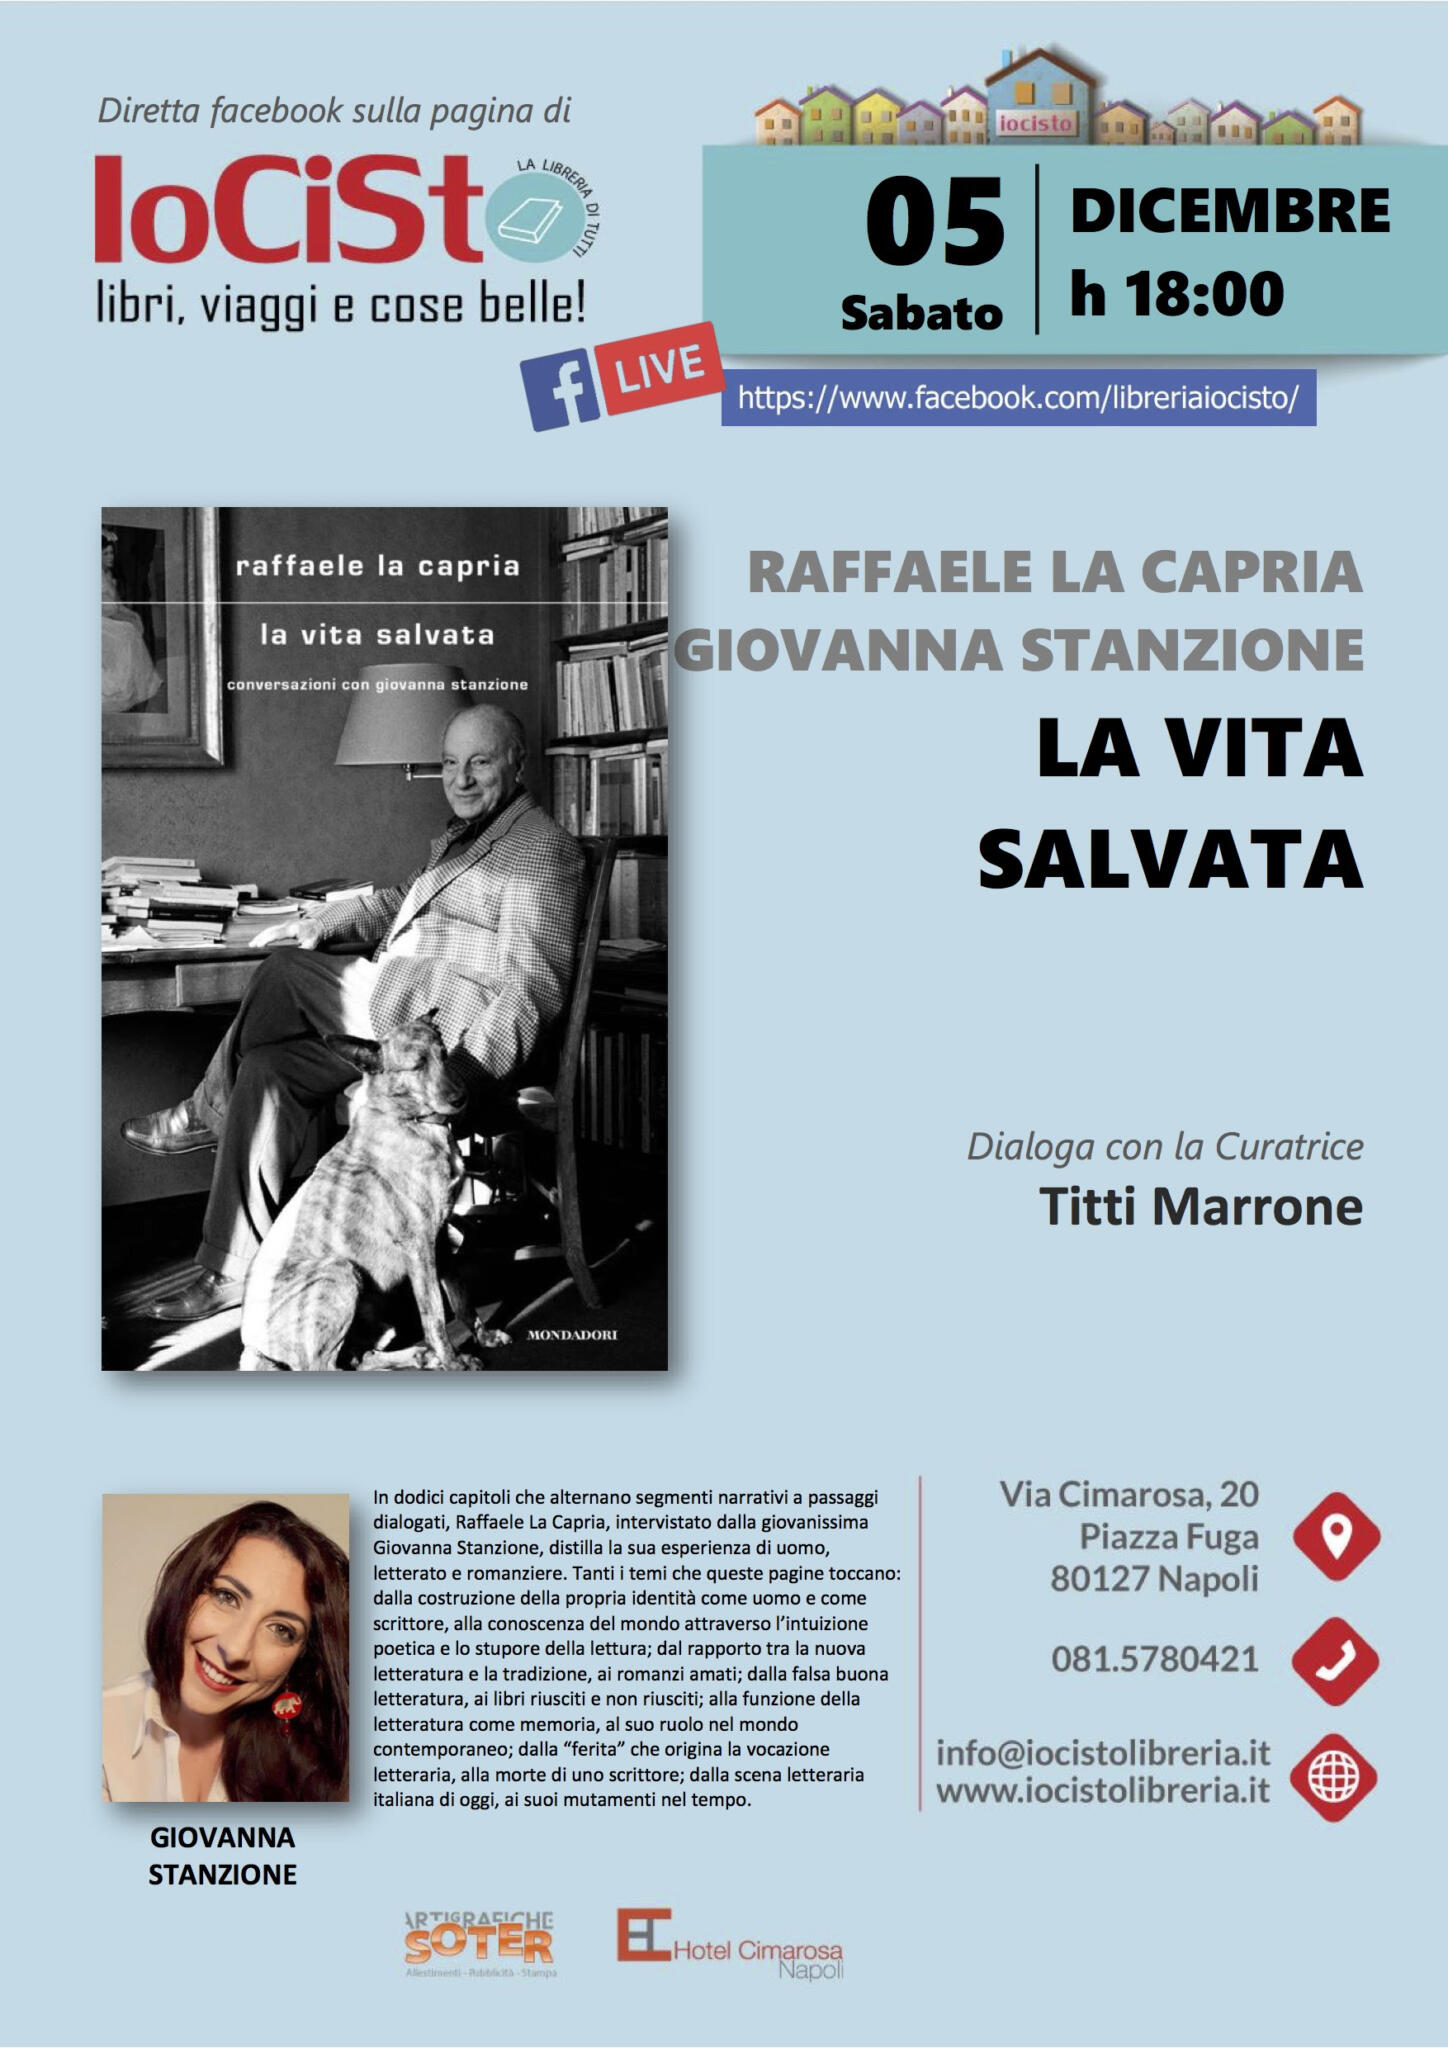 Presentazione online del volume di Raffaele La Capria e Giovanna Stanzione